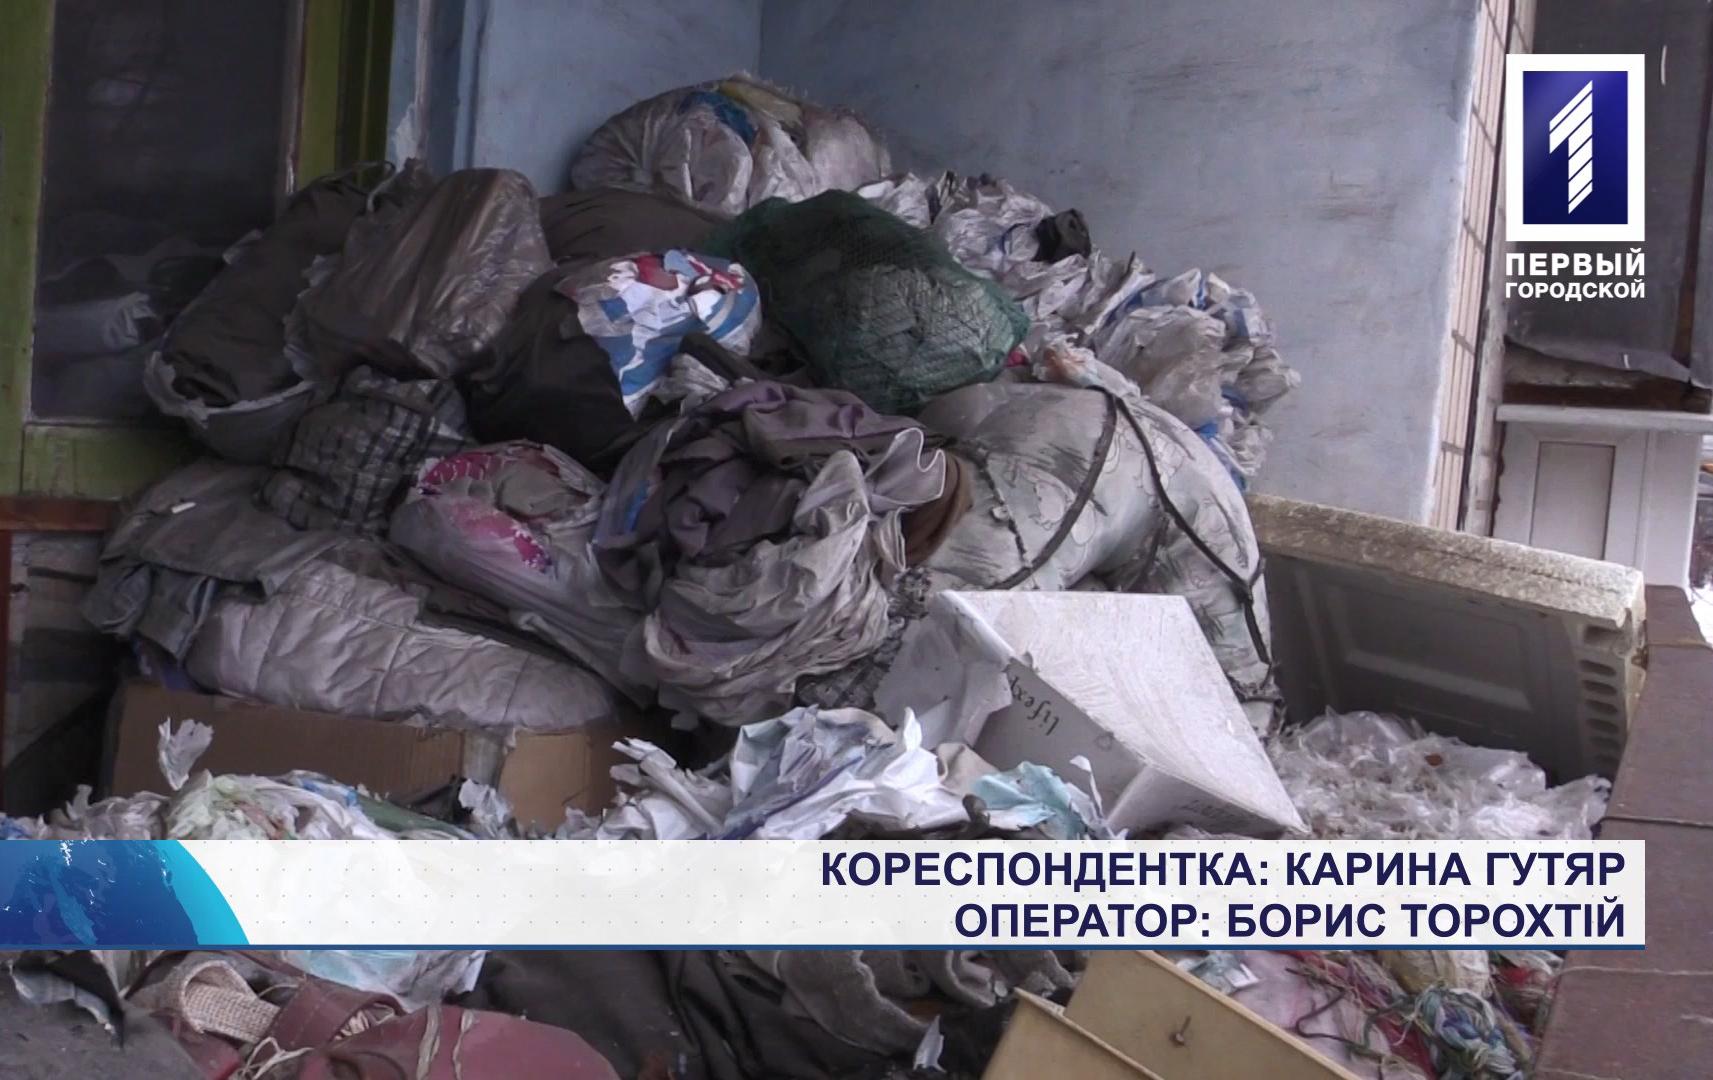 Мешканці багатоповерхівки у Кривому Розі скаржаться на сміття у квартирі сусідів